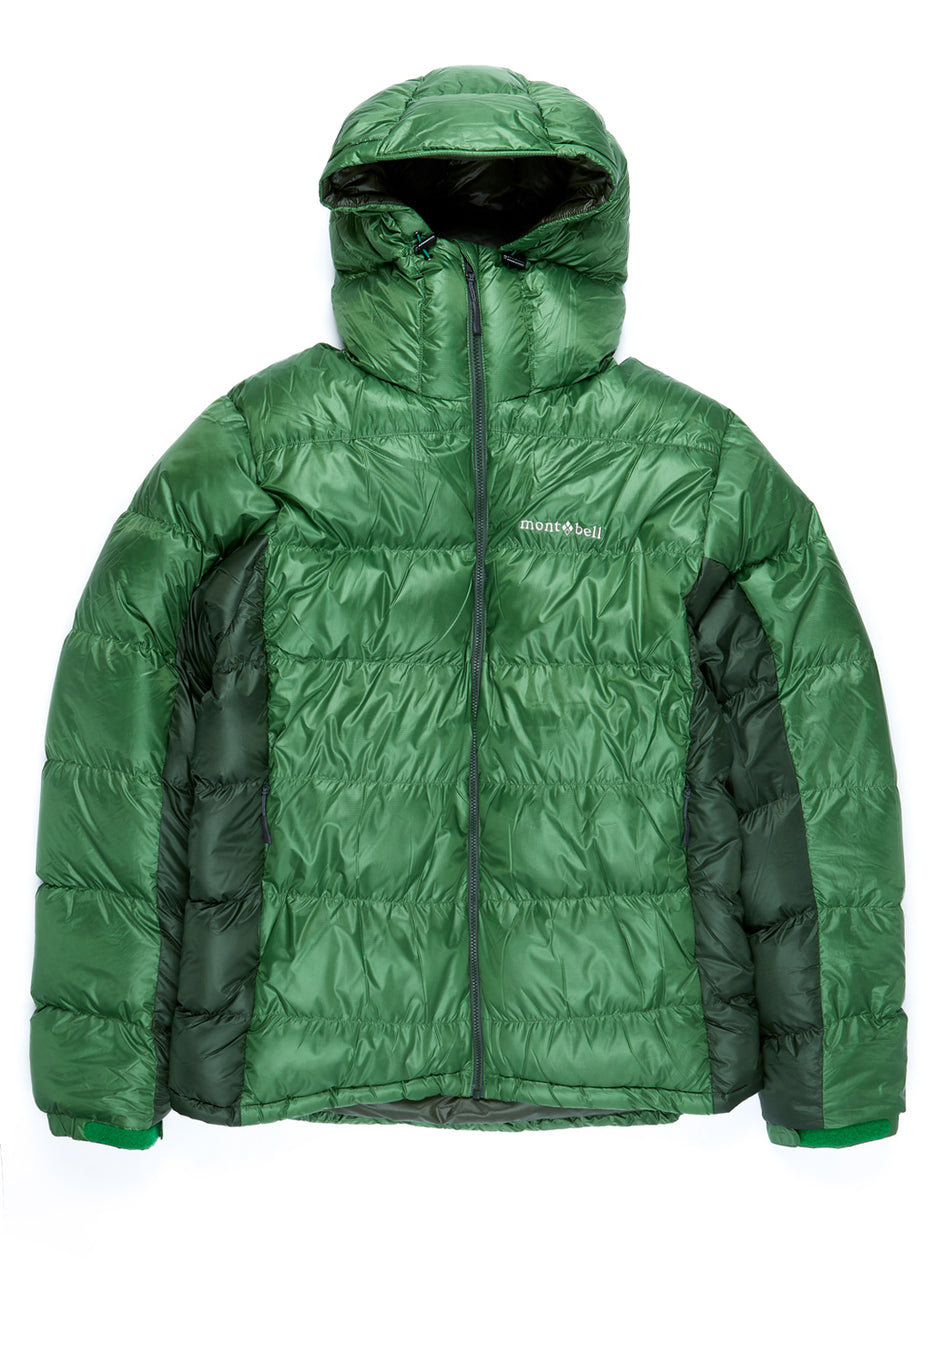 Montbell Men's Alpine Down Parka Jacket - Evergreen/Dark